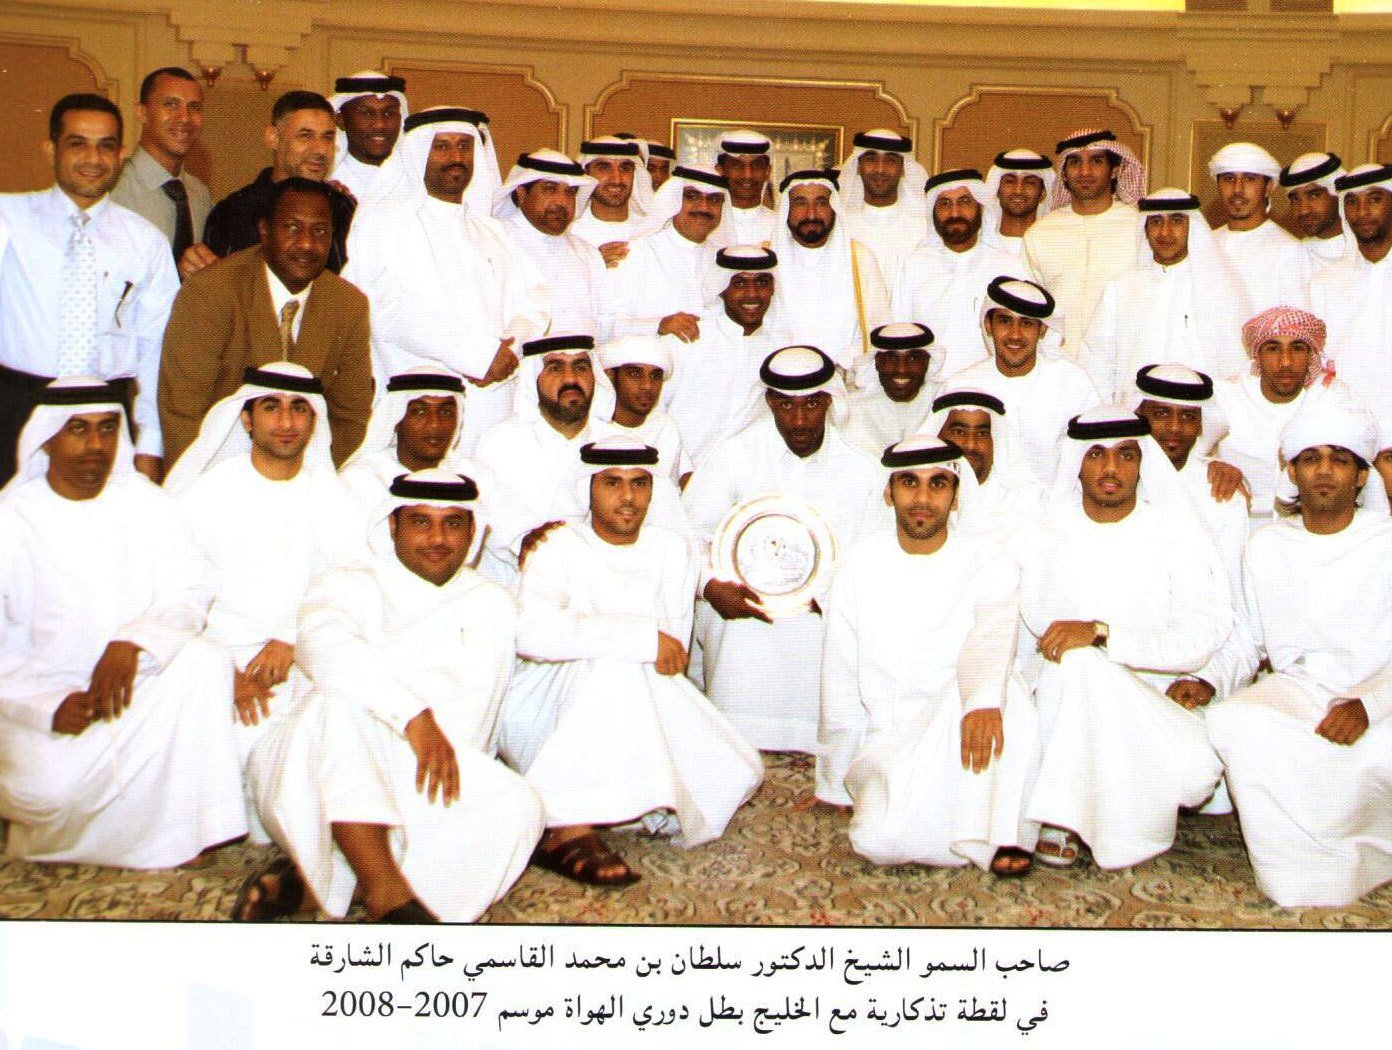 فريق نادي الخليج لكرة القدم 2007 -2008 في استضافة صاحب السمو الشيخ سلطان بن محمد القاسمي